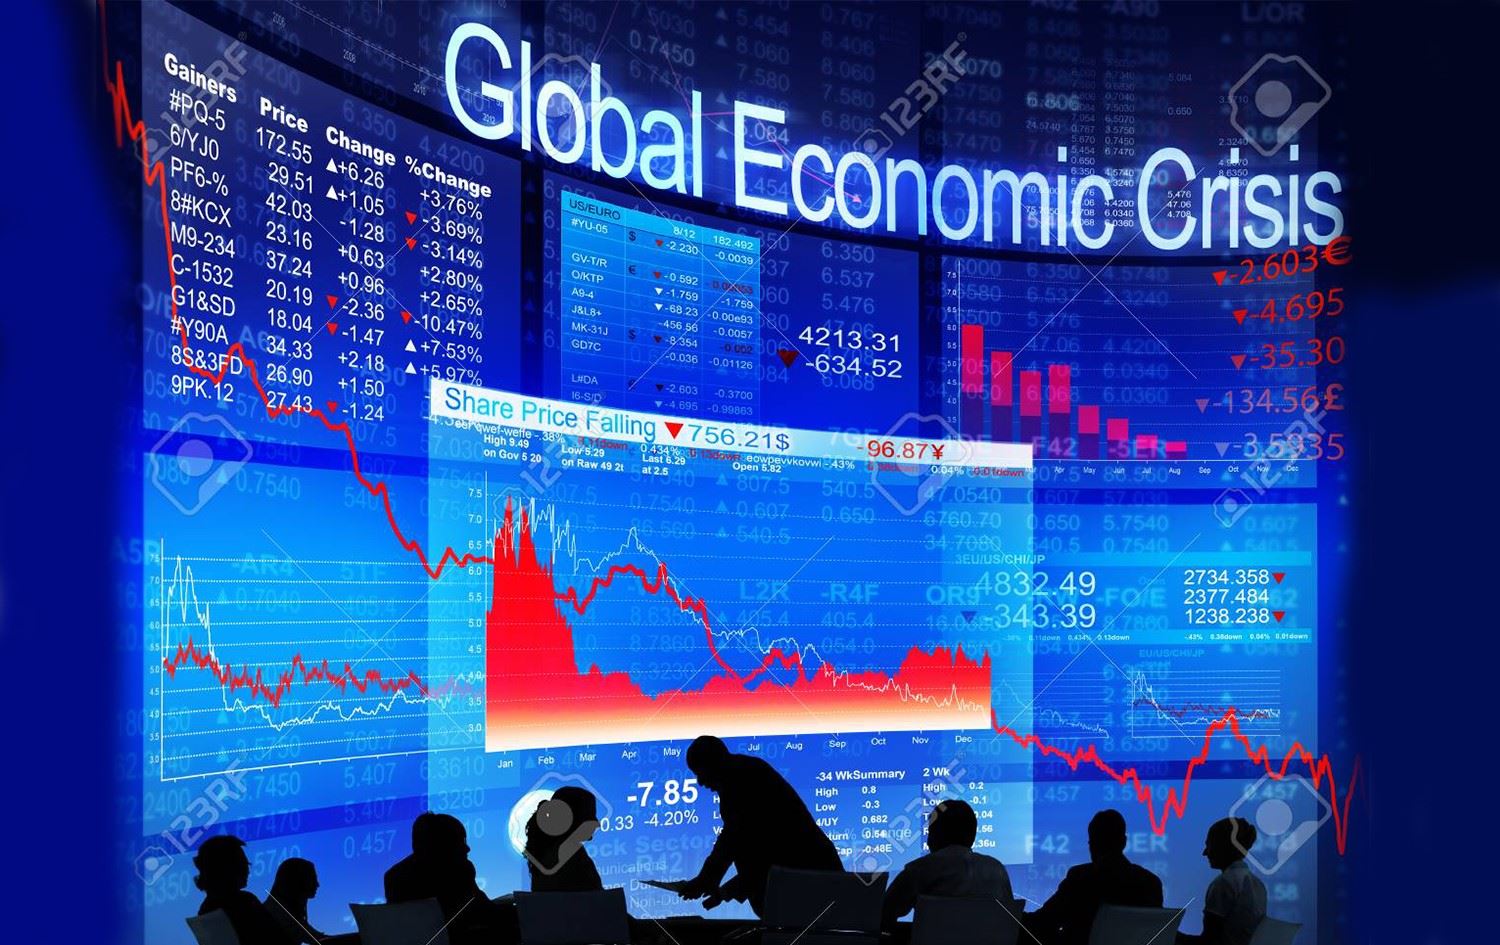 Dünyayı büyük bir ekonomik kriz bekliyor | Rudaw.net